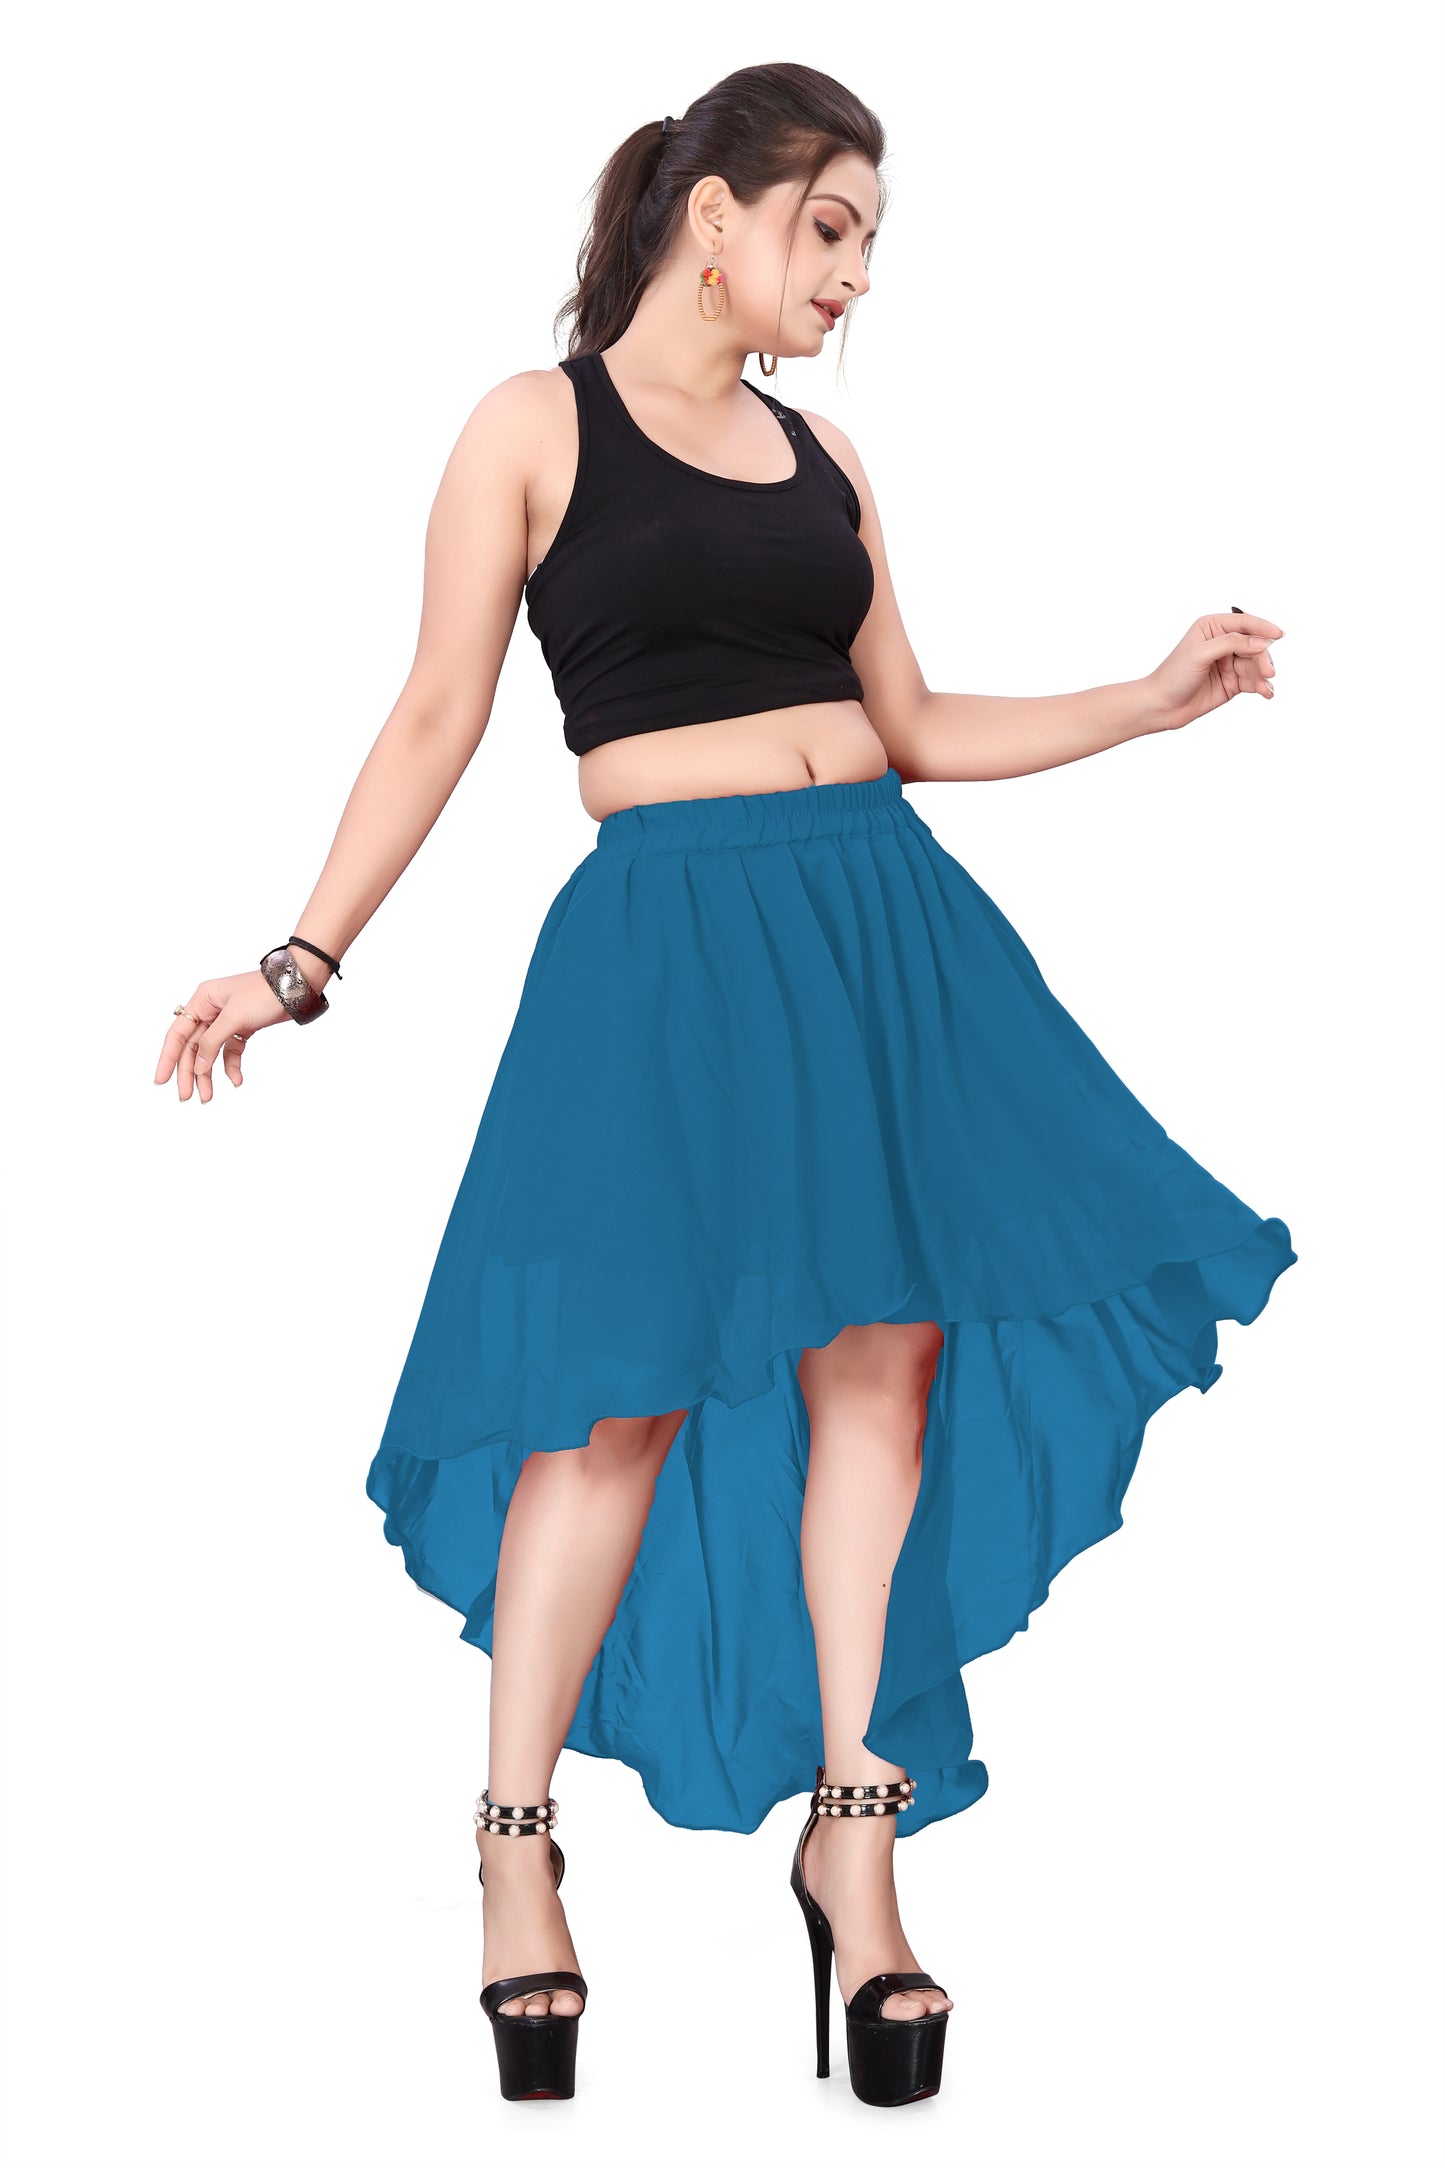 Chiffon Asymmetrical Skirt Belly Dance Skirt C9- Regular Size 2